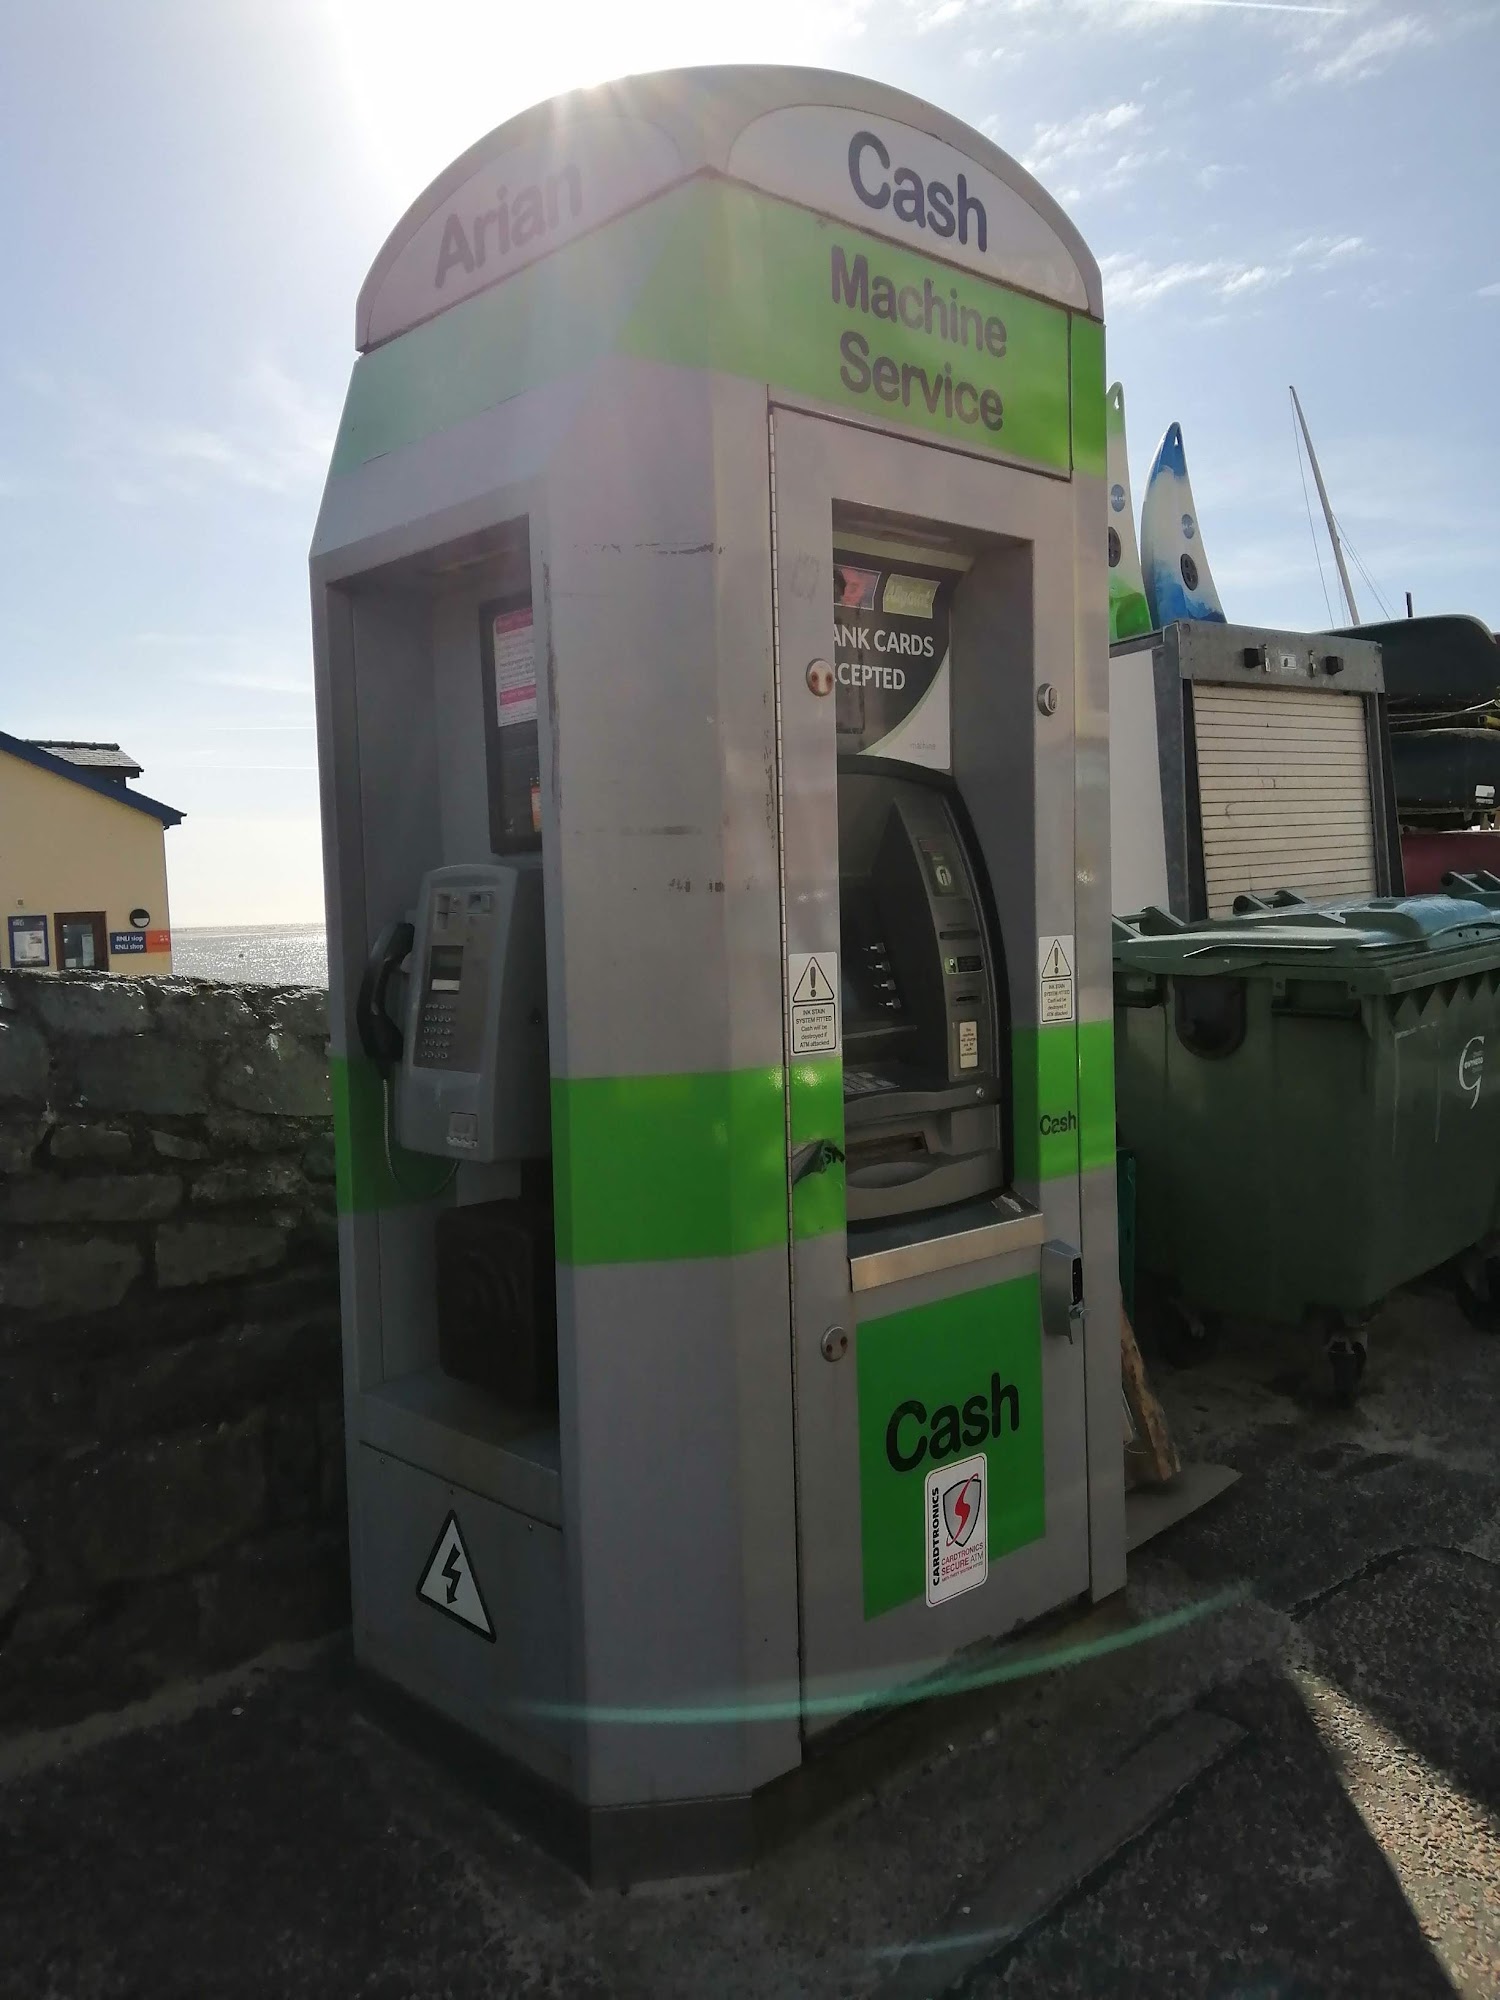 ATM (BT Phone/ATM Kiosk)